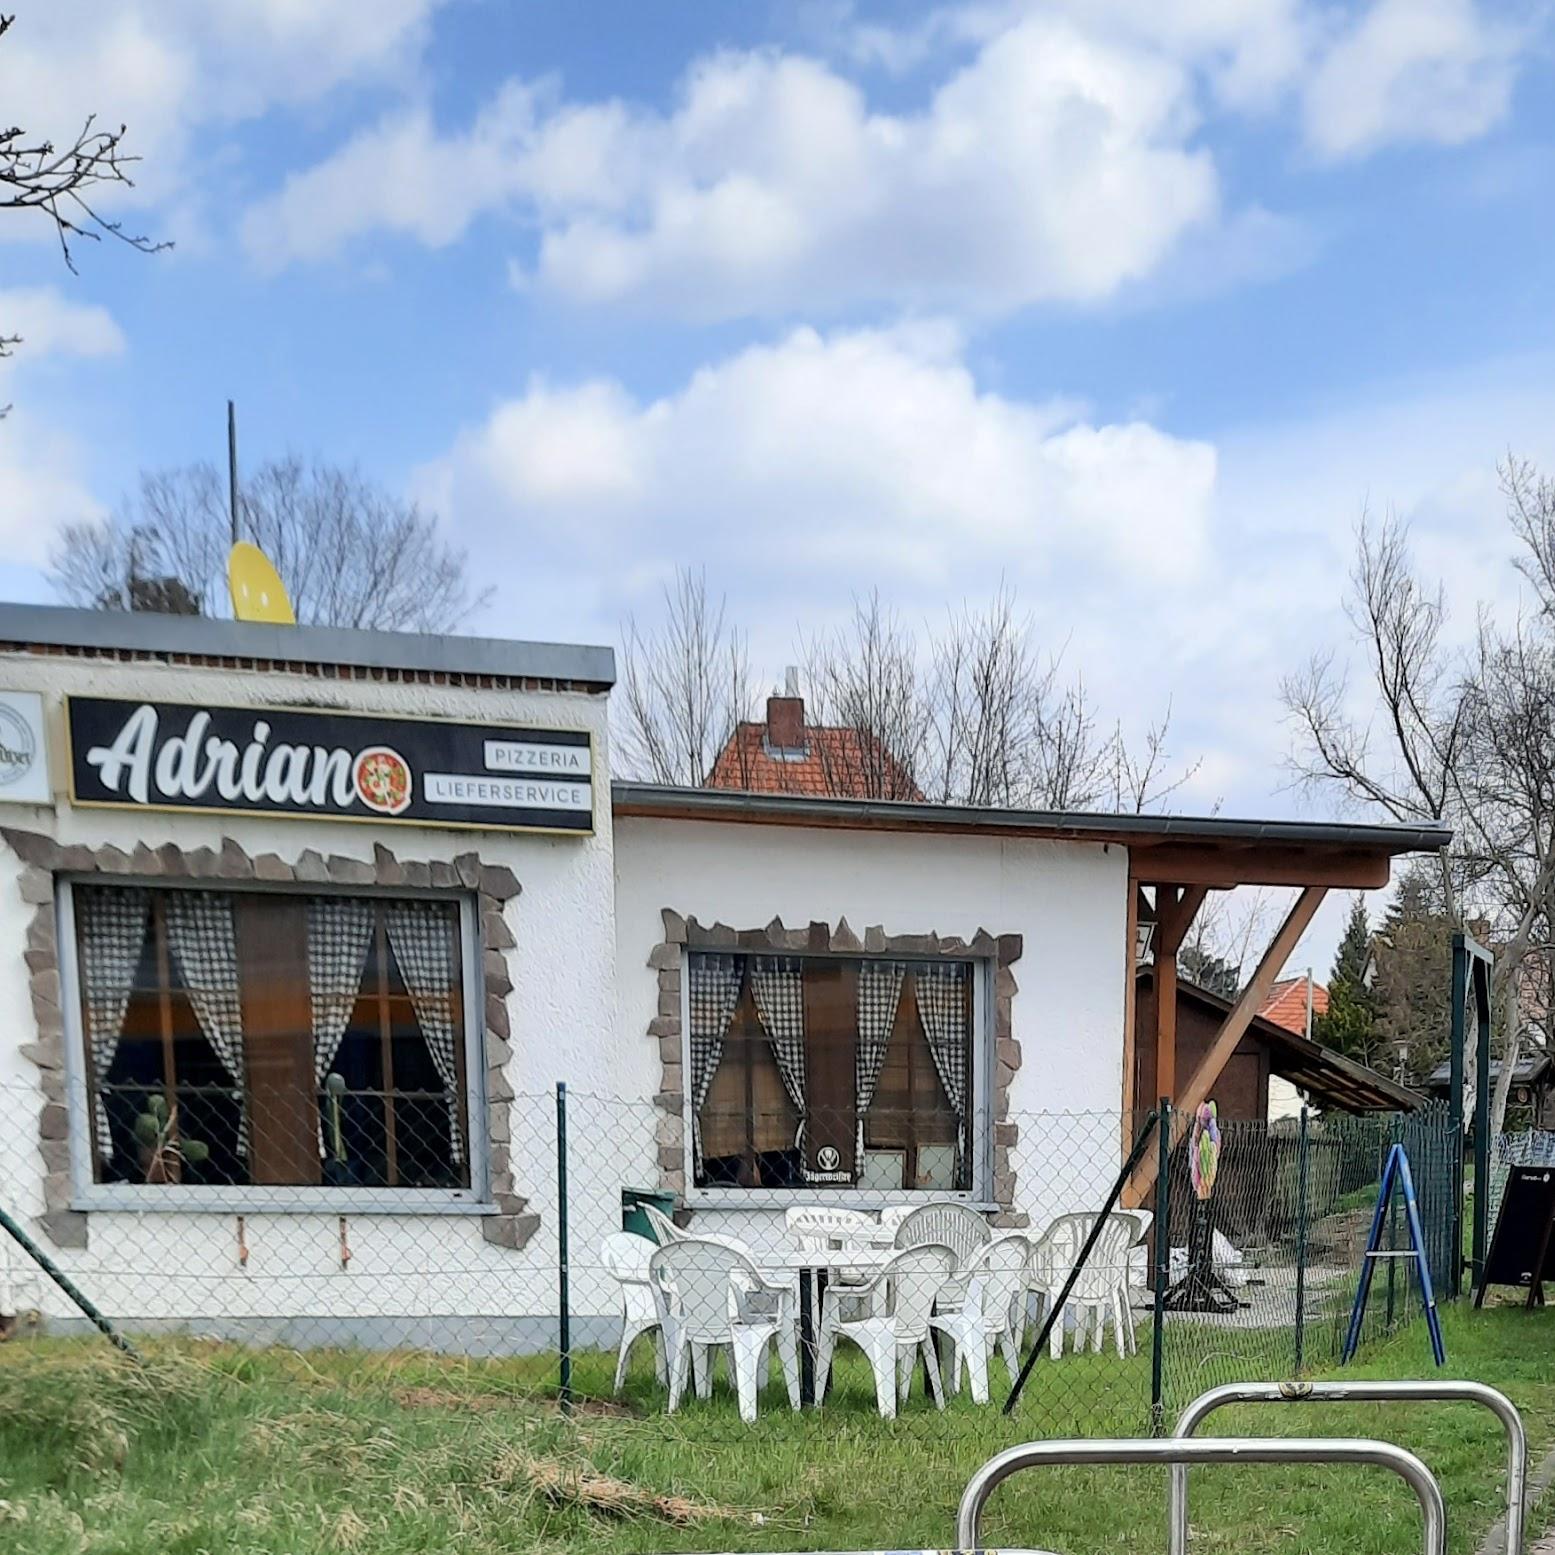 Restaurant "Pizzeria Adriano" in Leipzig